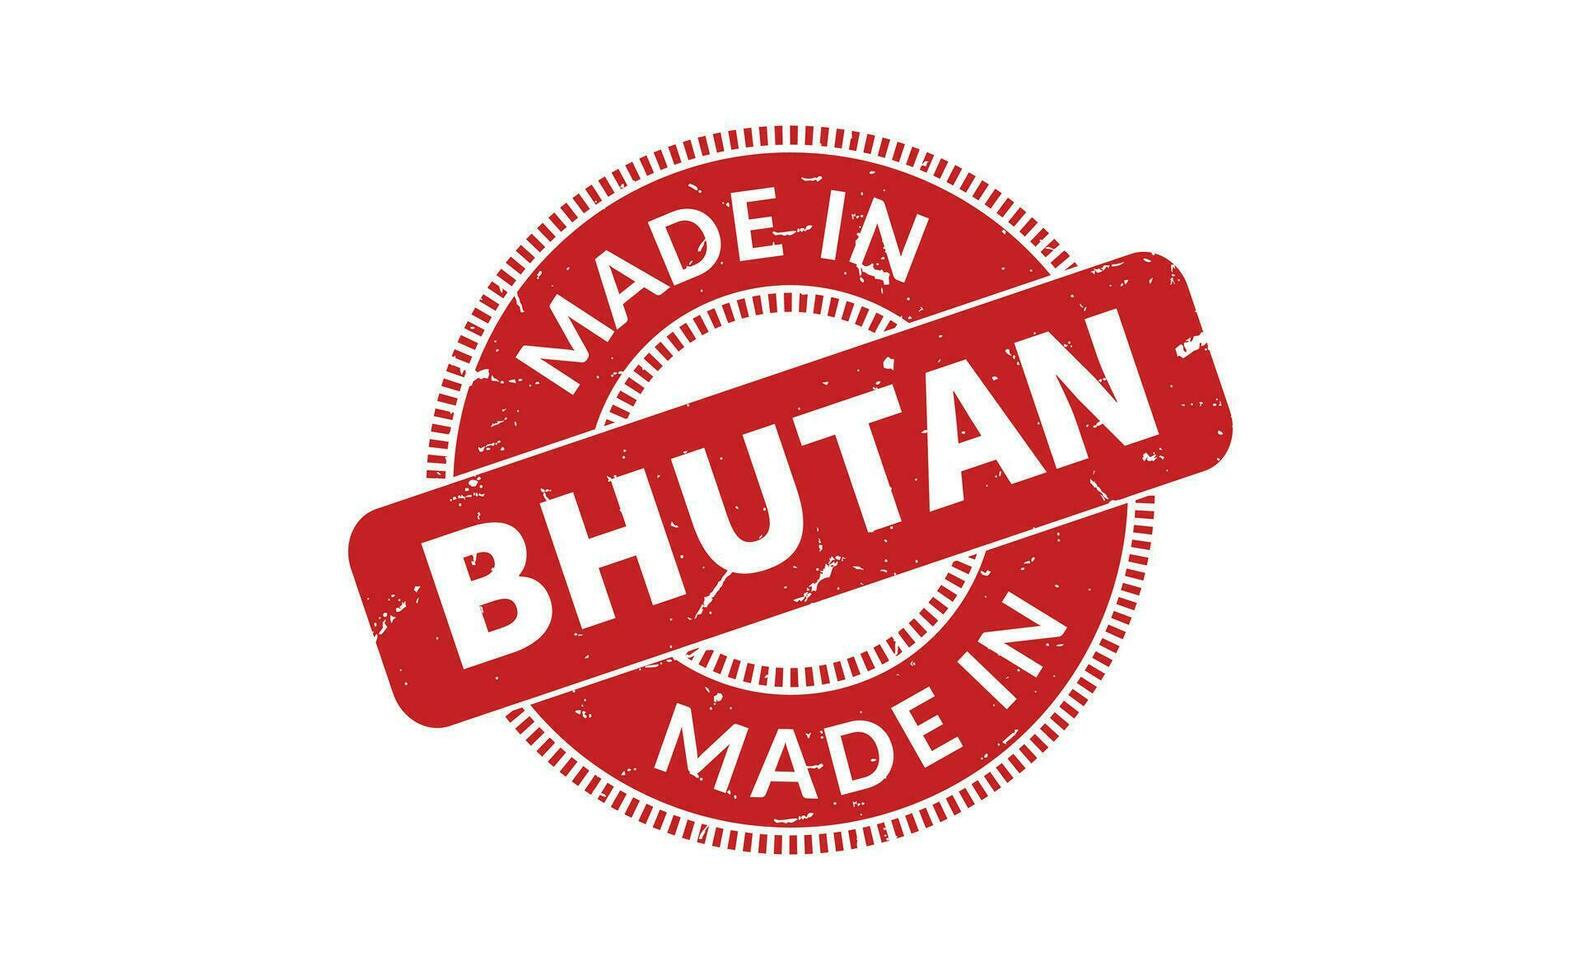 gemacht im Bhutan Gummi Briefmarke vektor